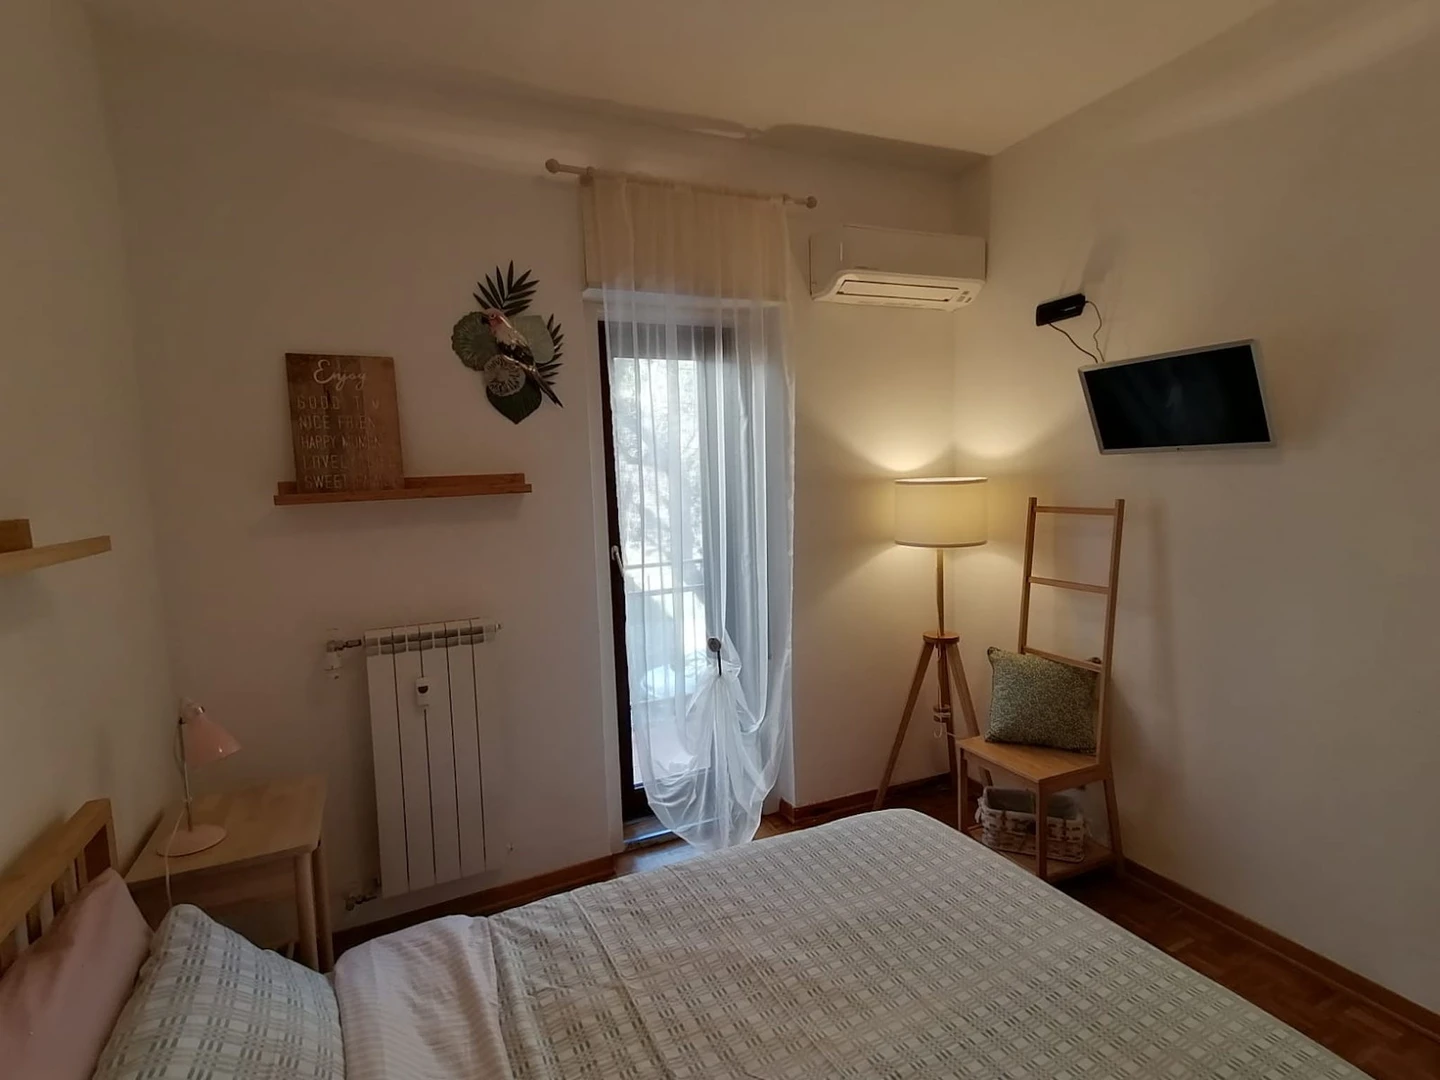 Trieste içinde 2 yatak odalı konaklama